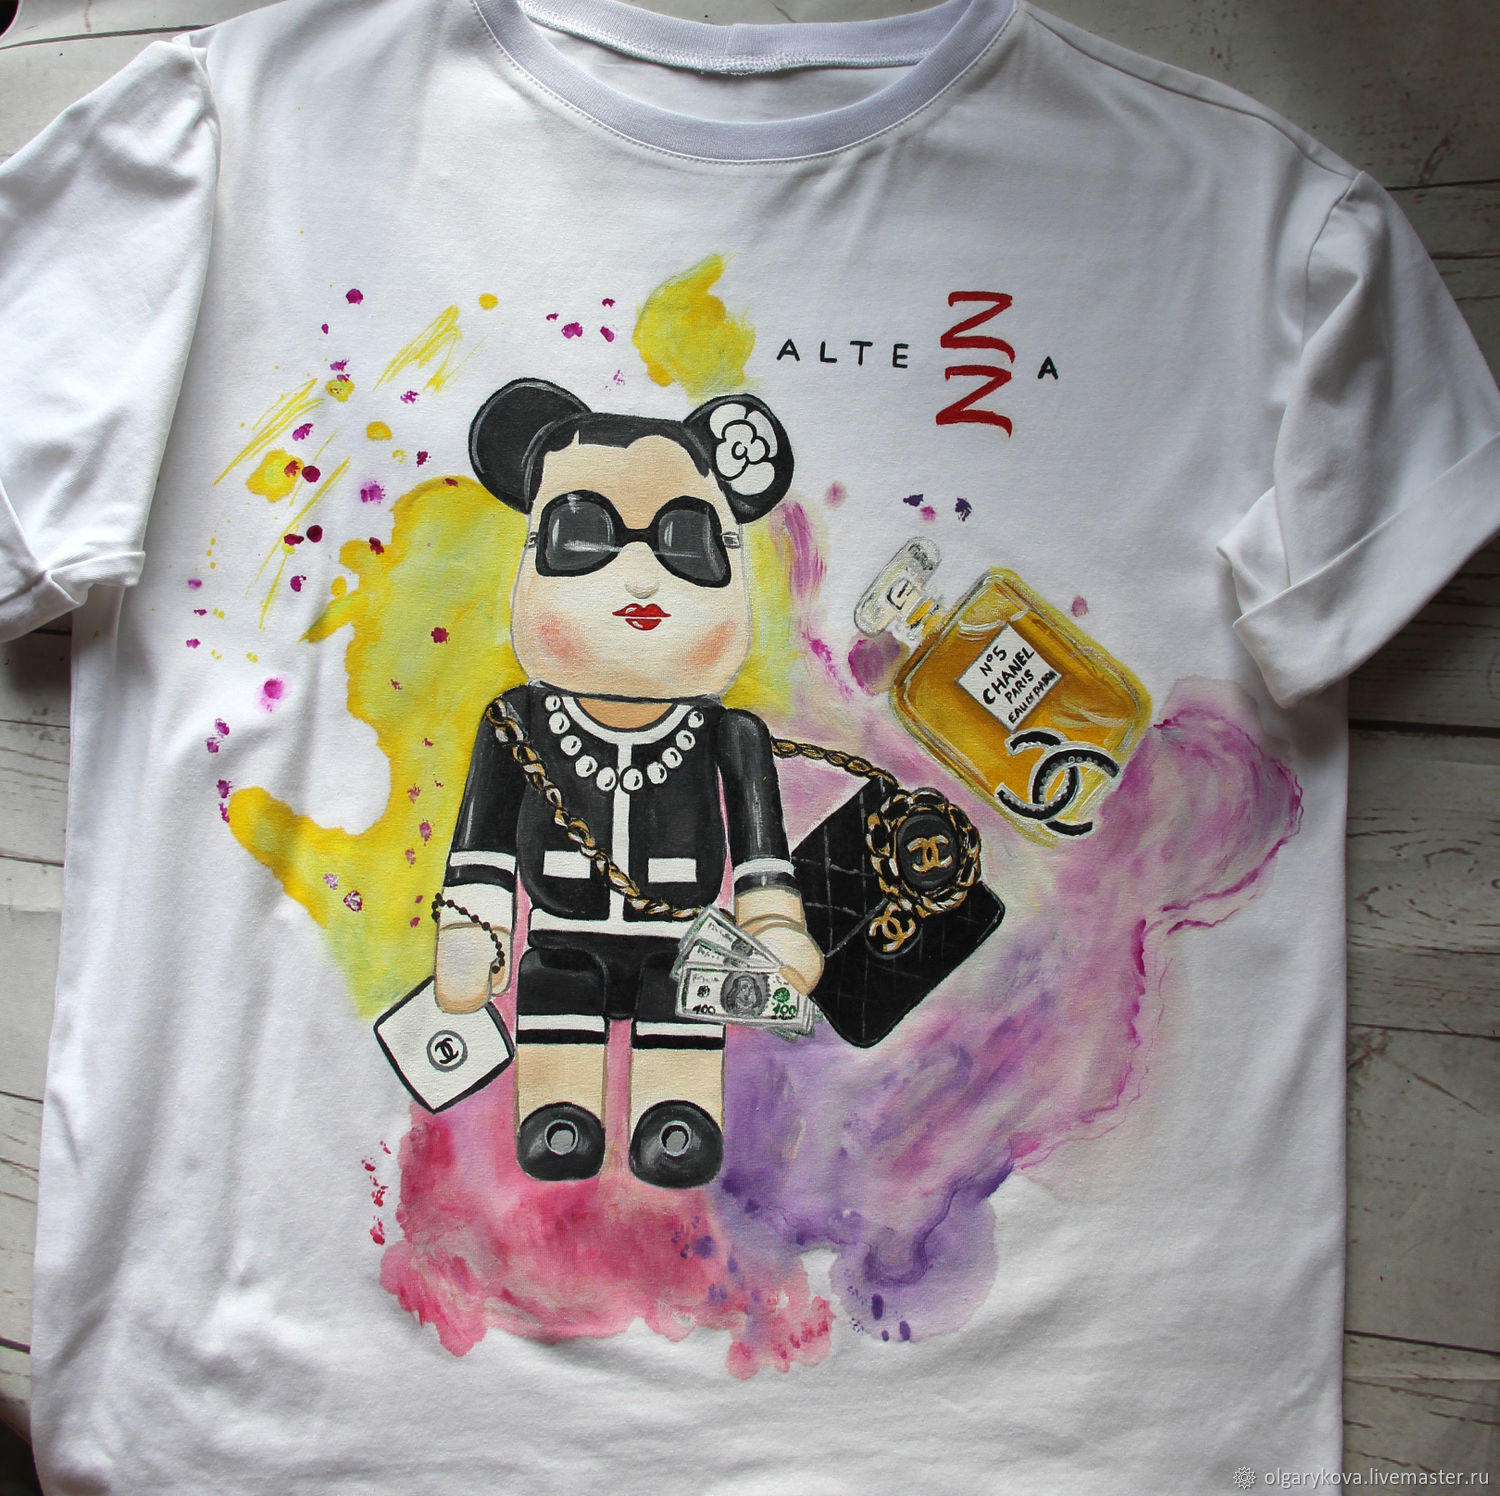 BearBrick Coco Chanel camiseta de dibujos Animados pintado a mano